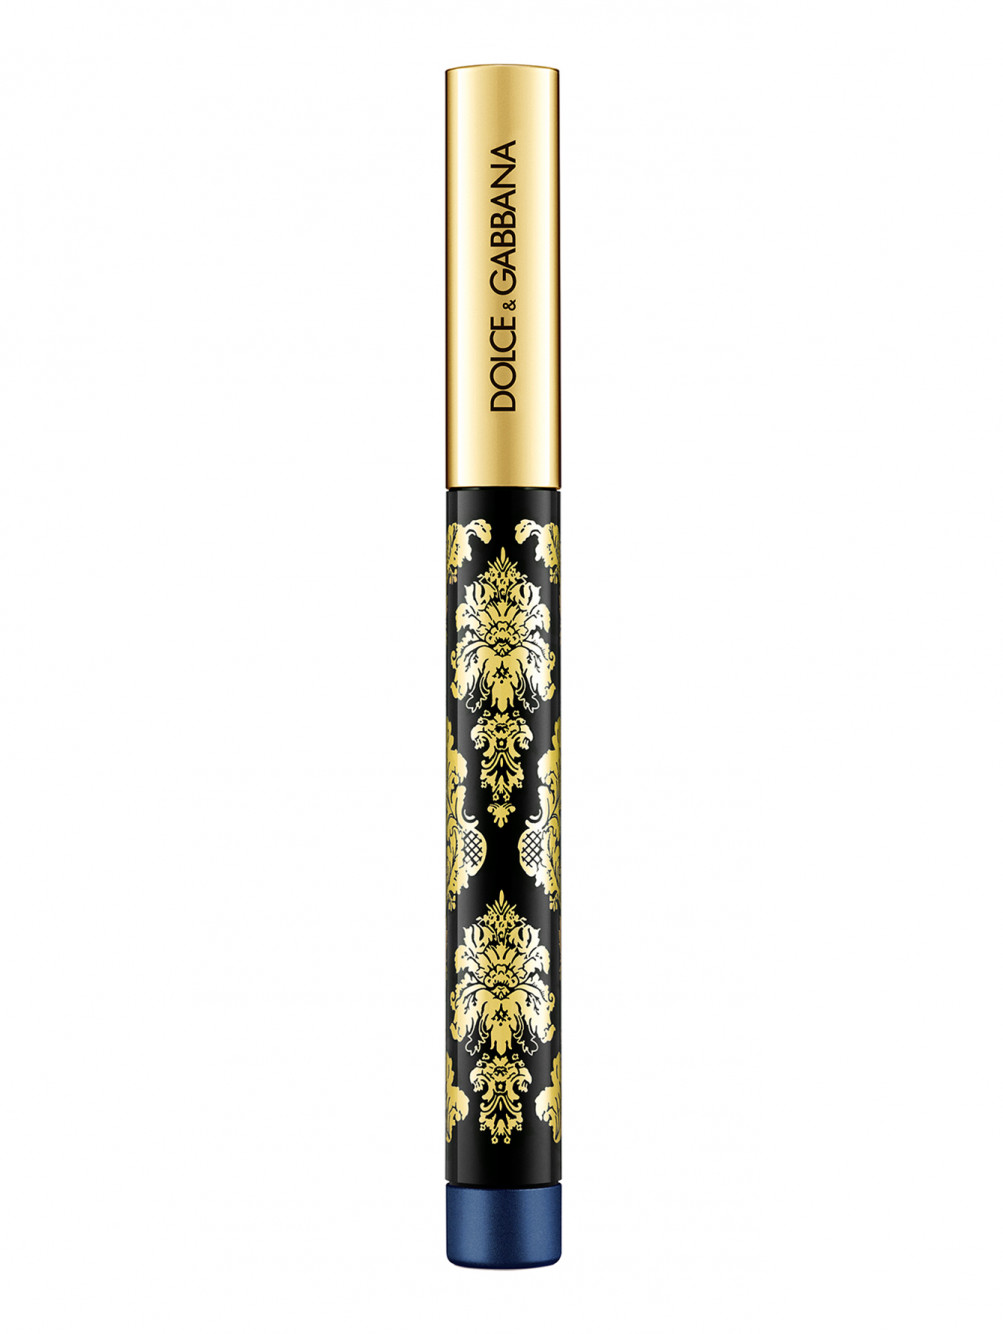 Кремовые тени-карандаш для глаз Intenseyes, 10 Navy, 1,4 мл - Обтравка2